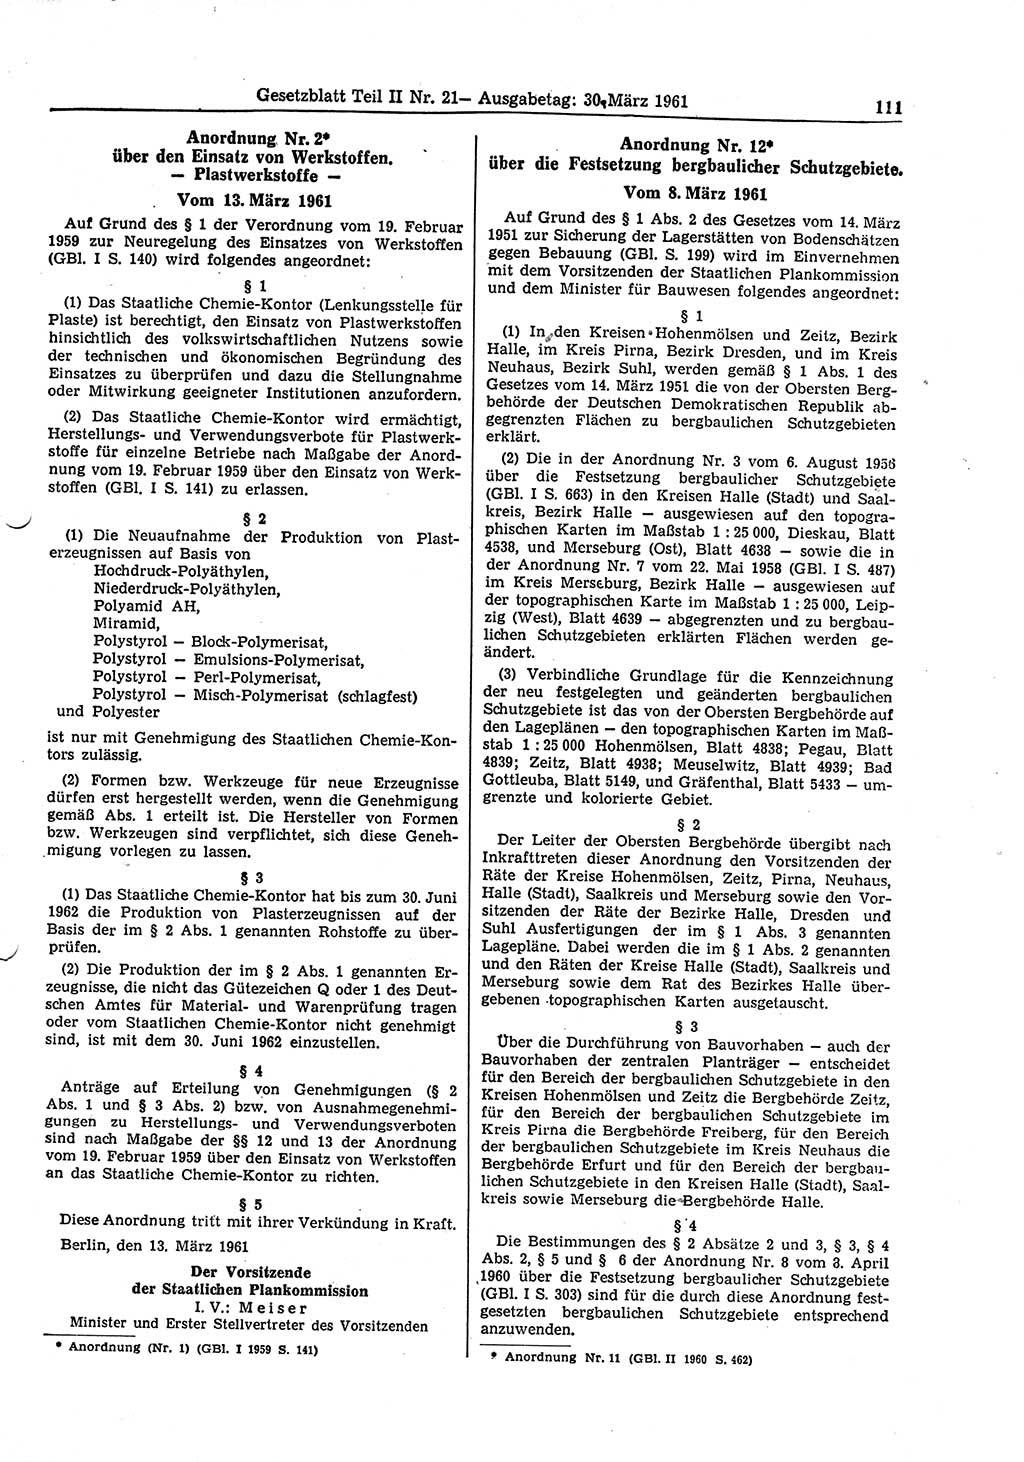 Gesetzblatt (GBl.) der Deutschen Demokratischen Republik (DDR) Teil ⅠⅠ 1961, Seite 111 (GBl. DDR ⅠⅠ 1961, S. 111)